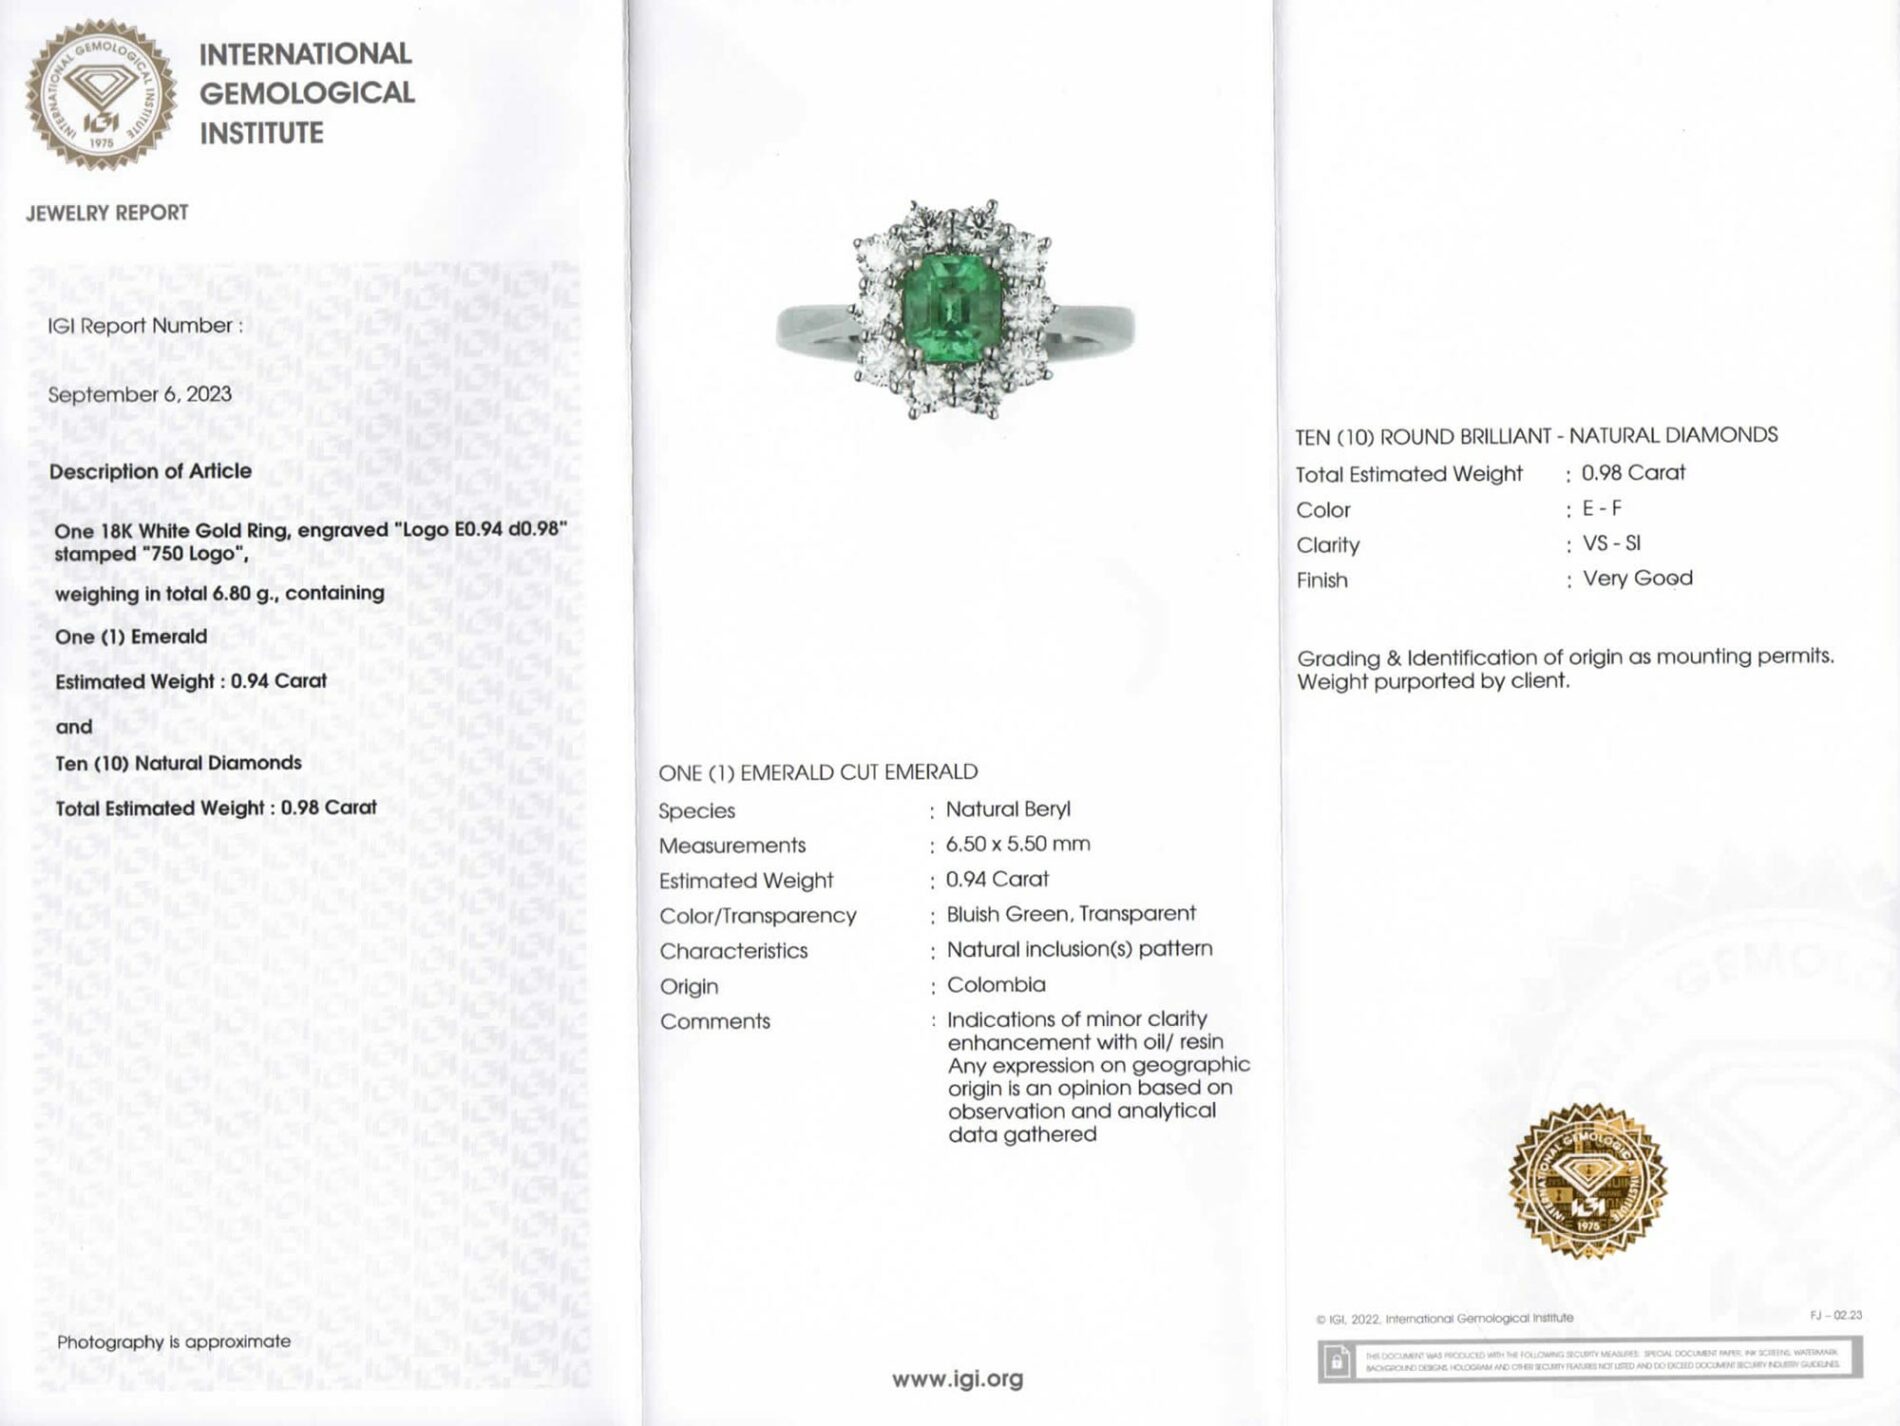 Anello rosetta smeraldo 0.94 ct Prestige White - Gioielleria Casavola di Noci - idee regalo compleanno 50 anni moglie - certificato internazionale IGI